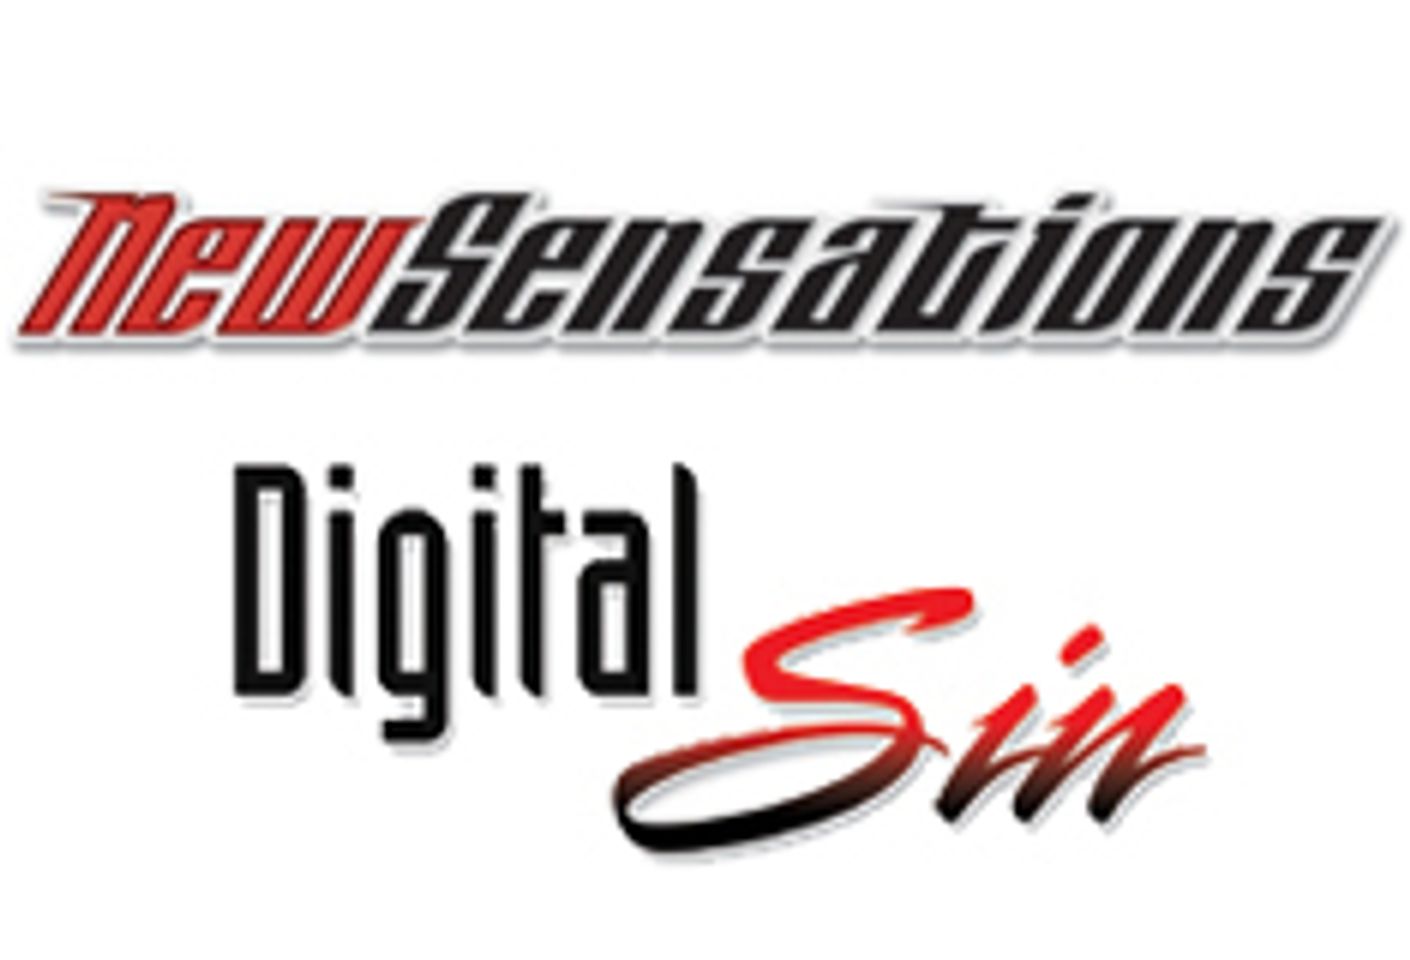 New Sensations/Digital Sin Receive 57 AVN Award Nominations